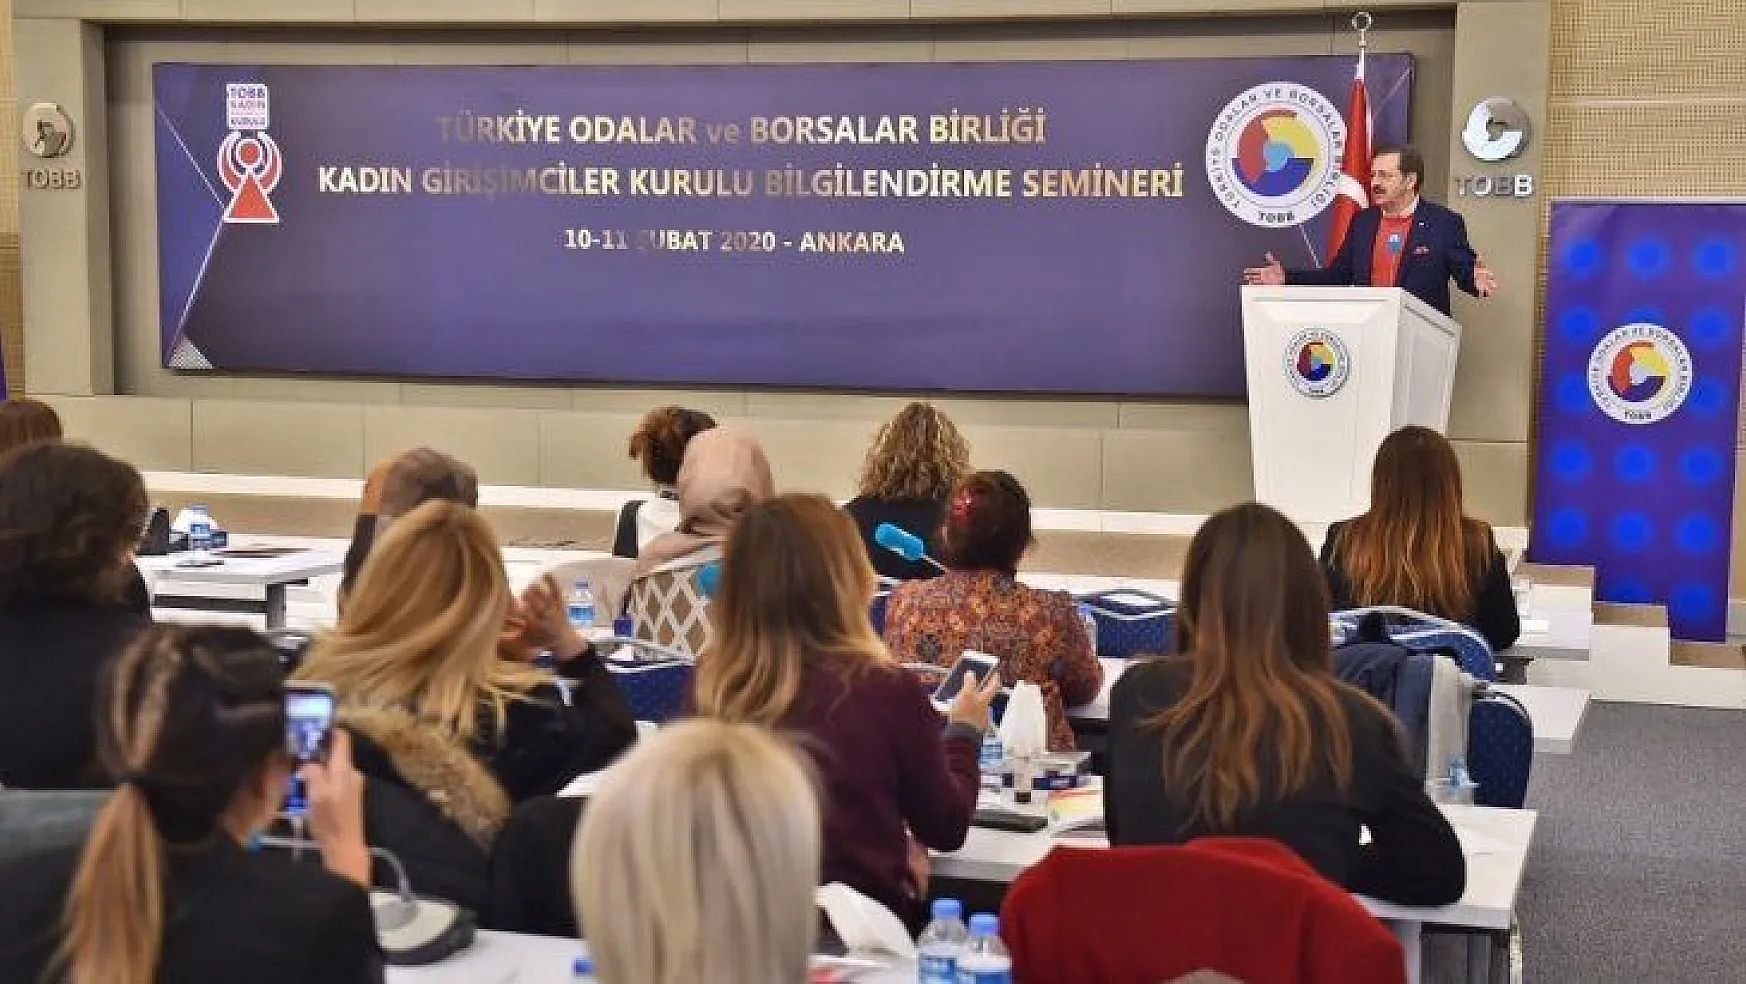 Fethiyeli Kadın Girişimciler Ankara'da